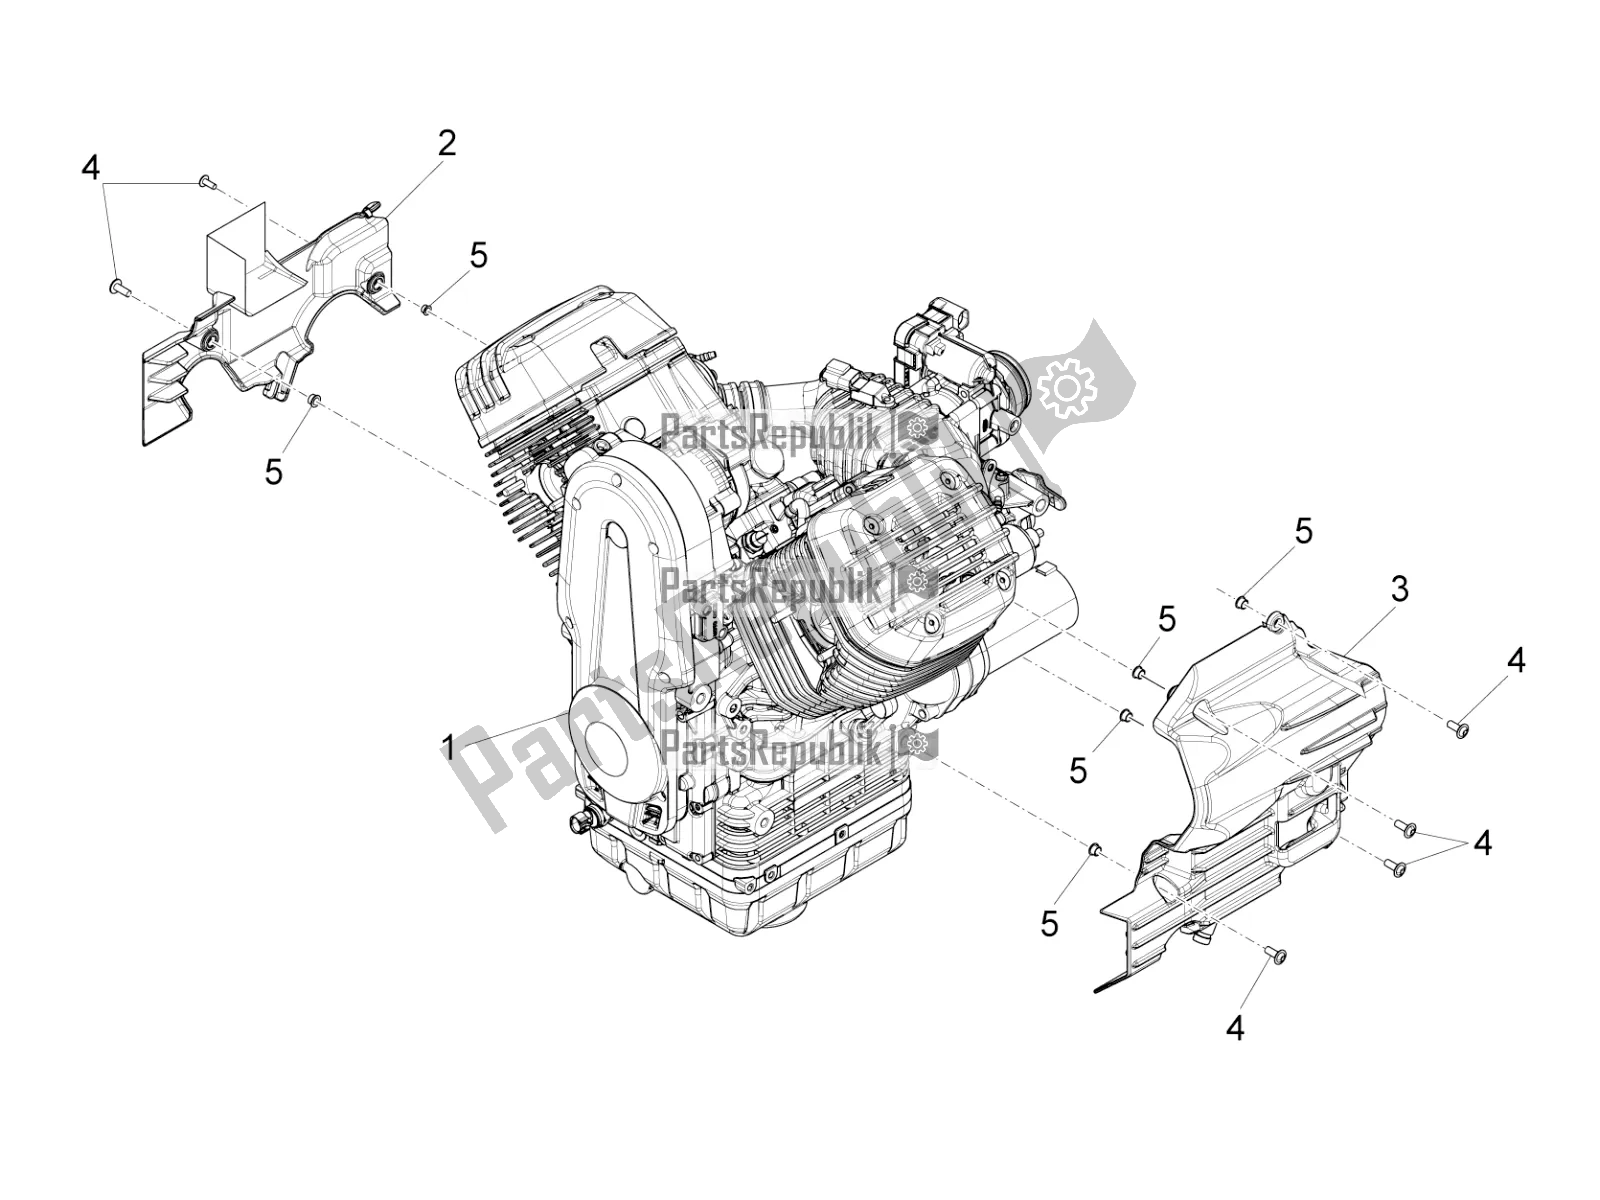 Todas las partes para Palanca Parcial Completa Del Motor de Moto-Guzzi Audace 1400 Carbon ABS Apac 2017